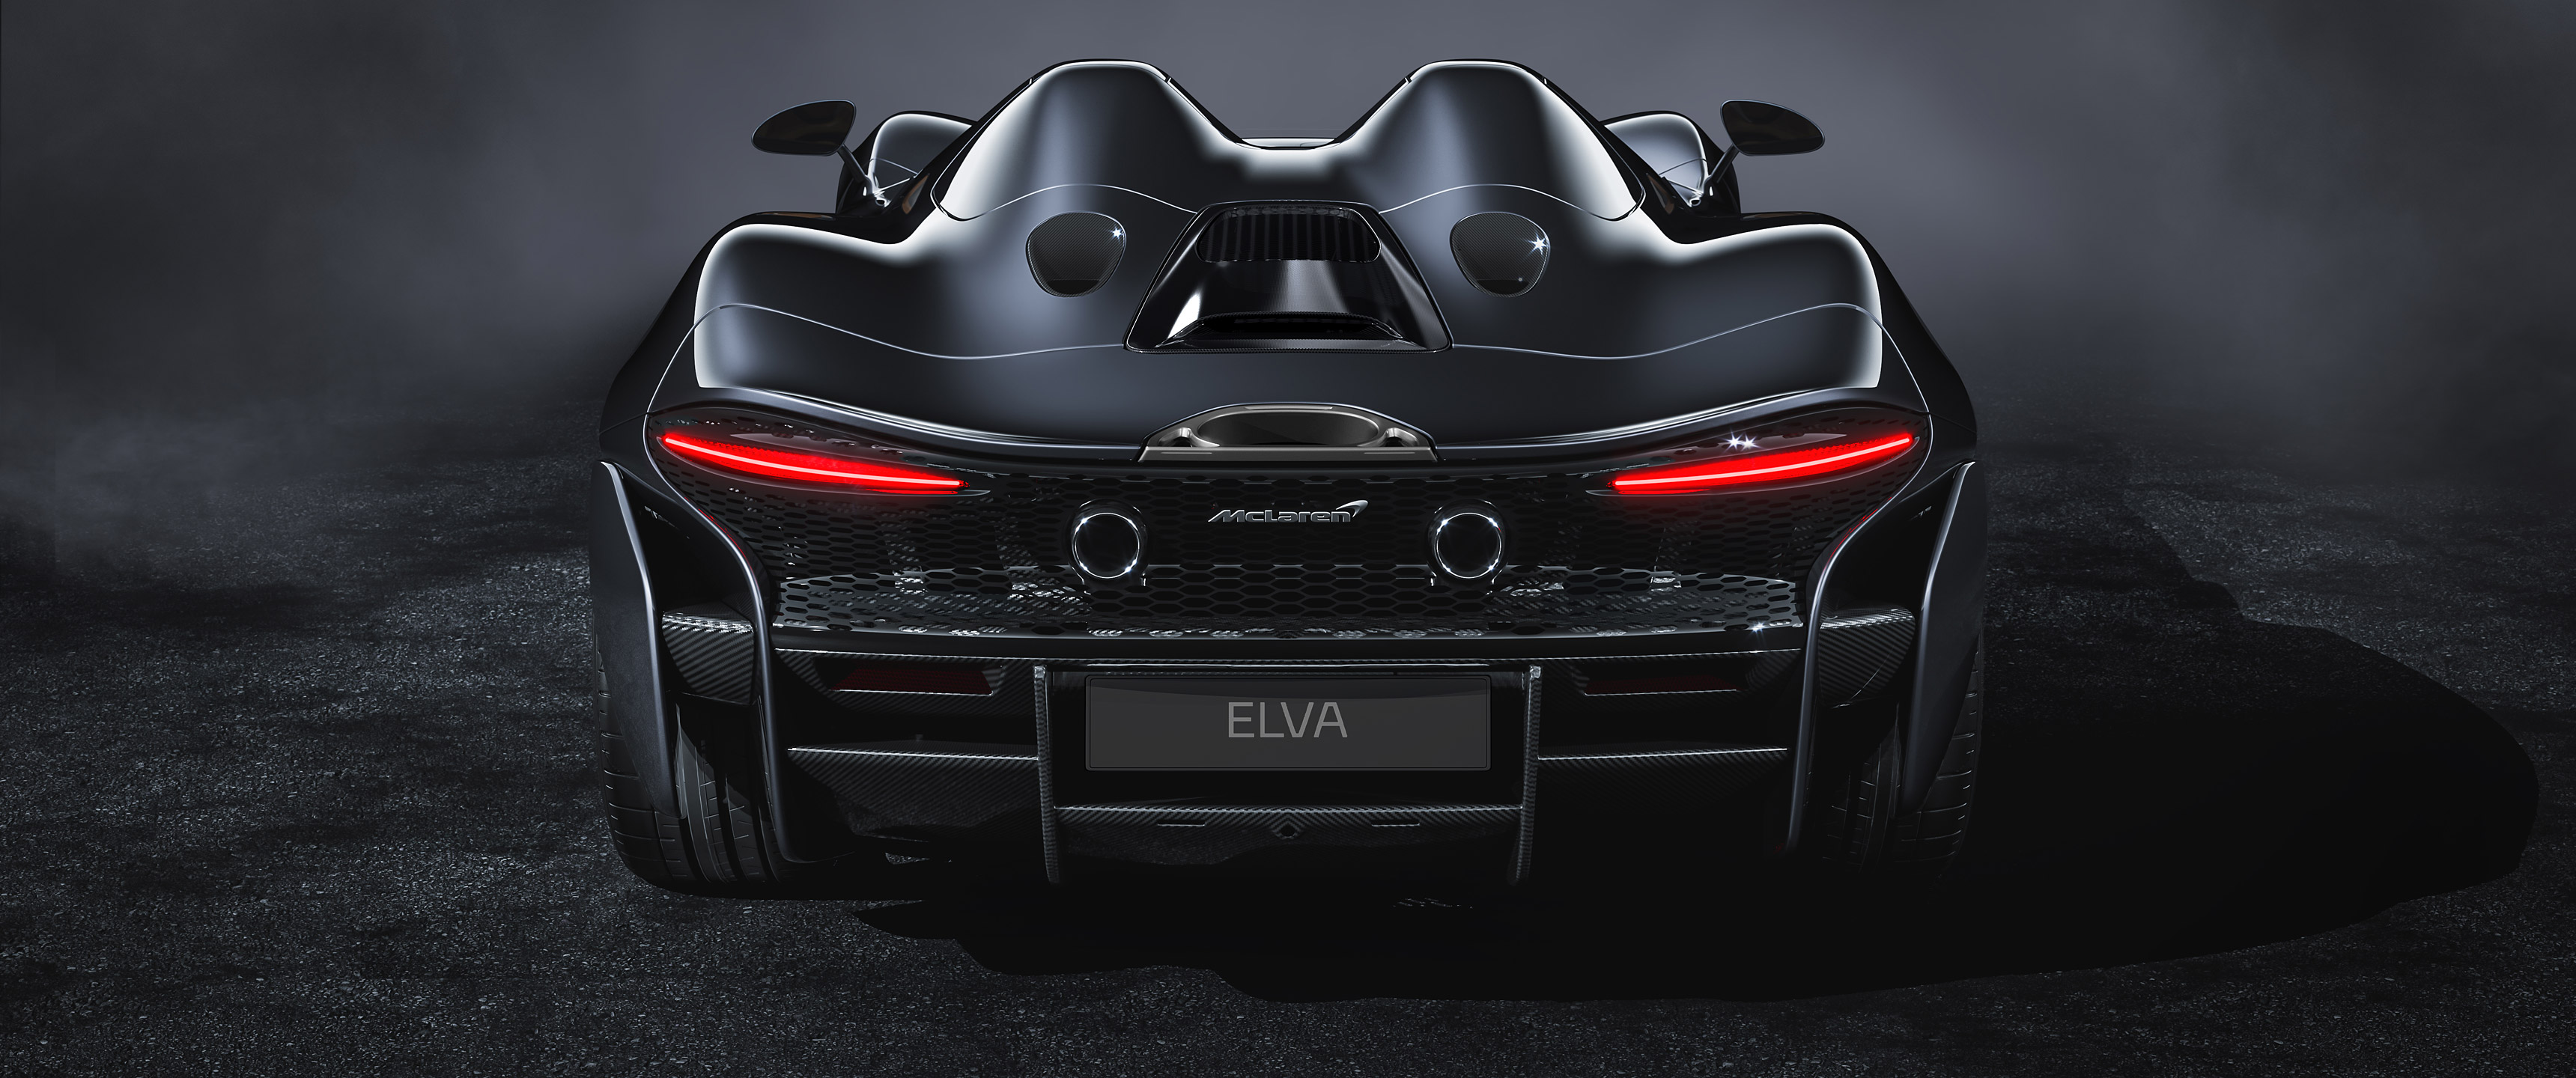  2021 McLaren Elva Wallpaper.